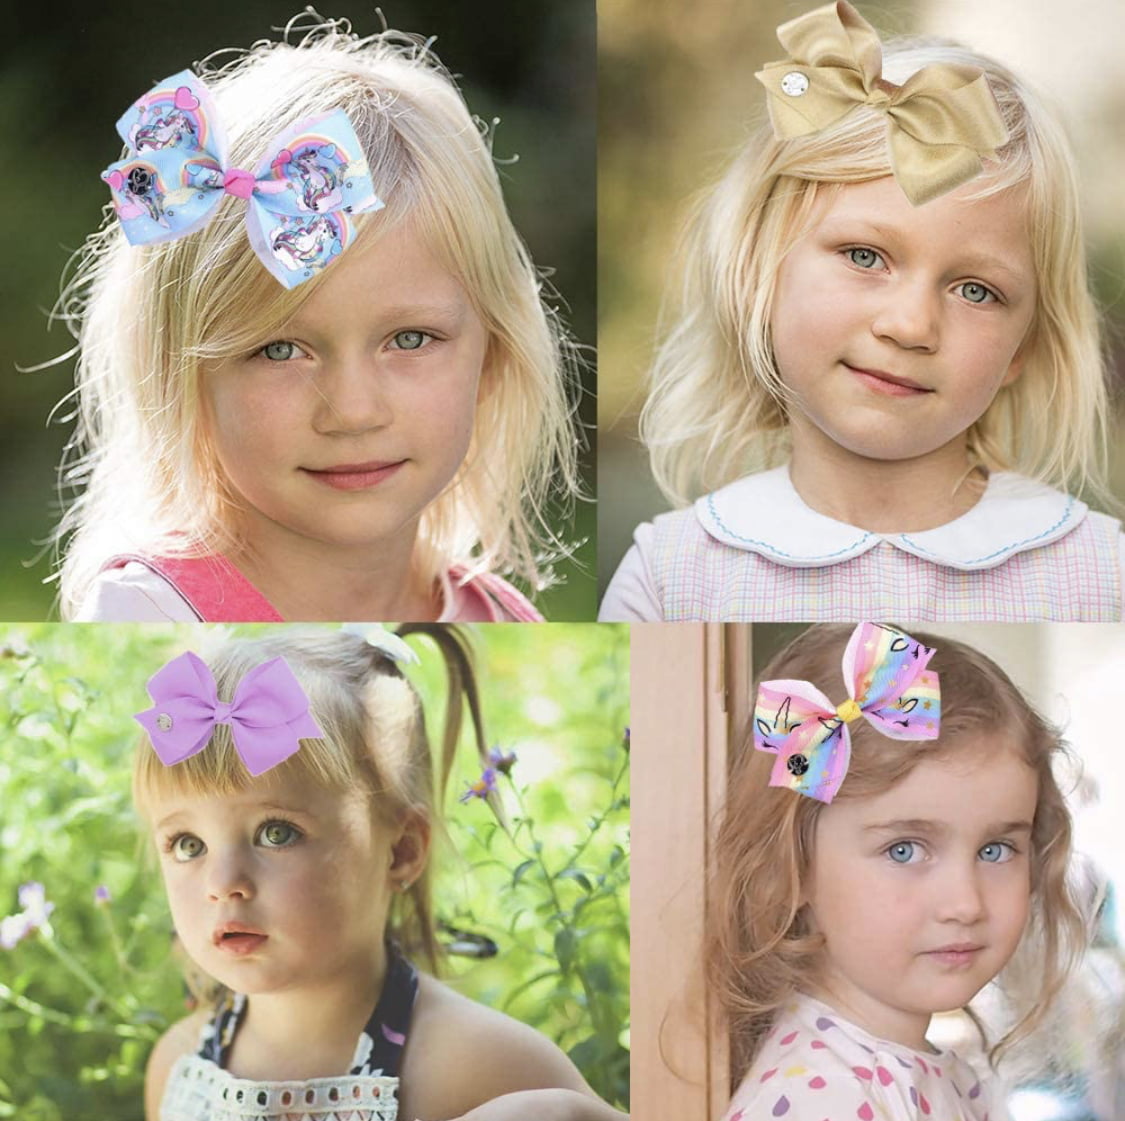 HONMEET 20pcs hollow hair clip hair accessories little girl accessories  hair bows hair clips for girls 8-12 hair accessories for girls 4-6 cute  hair